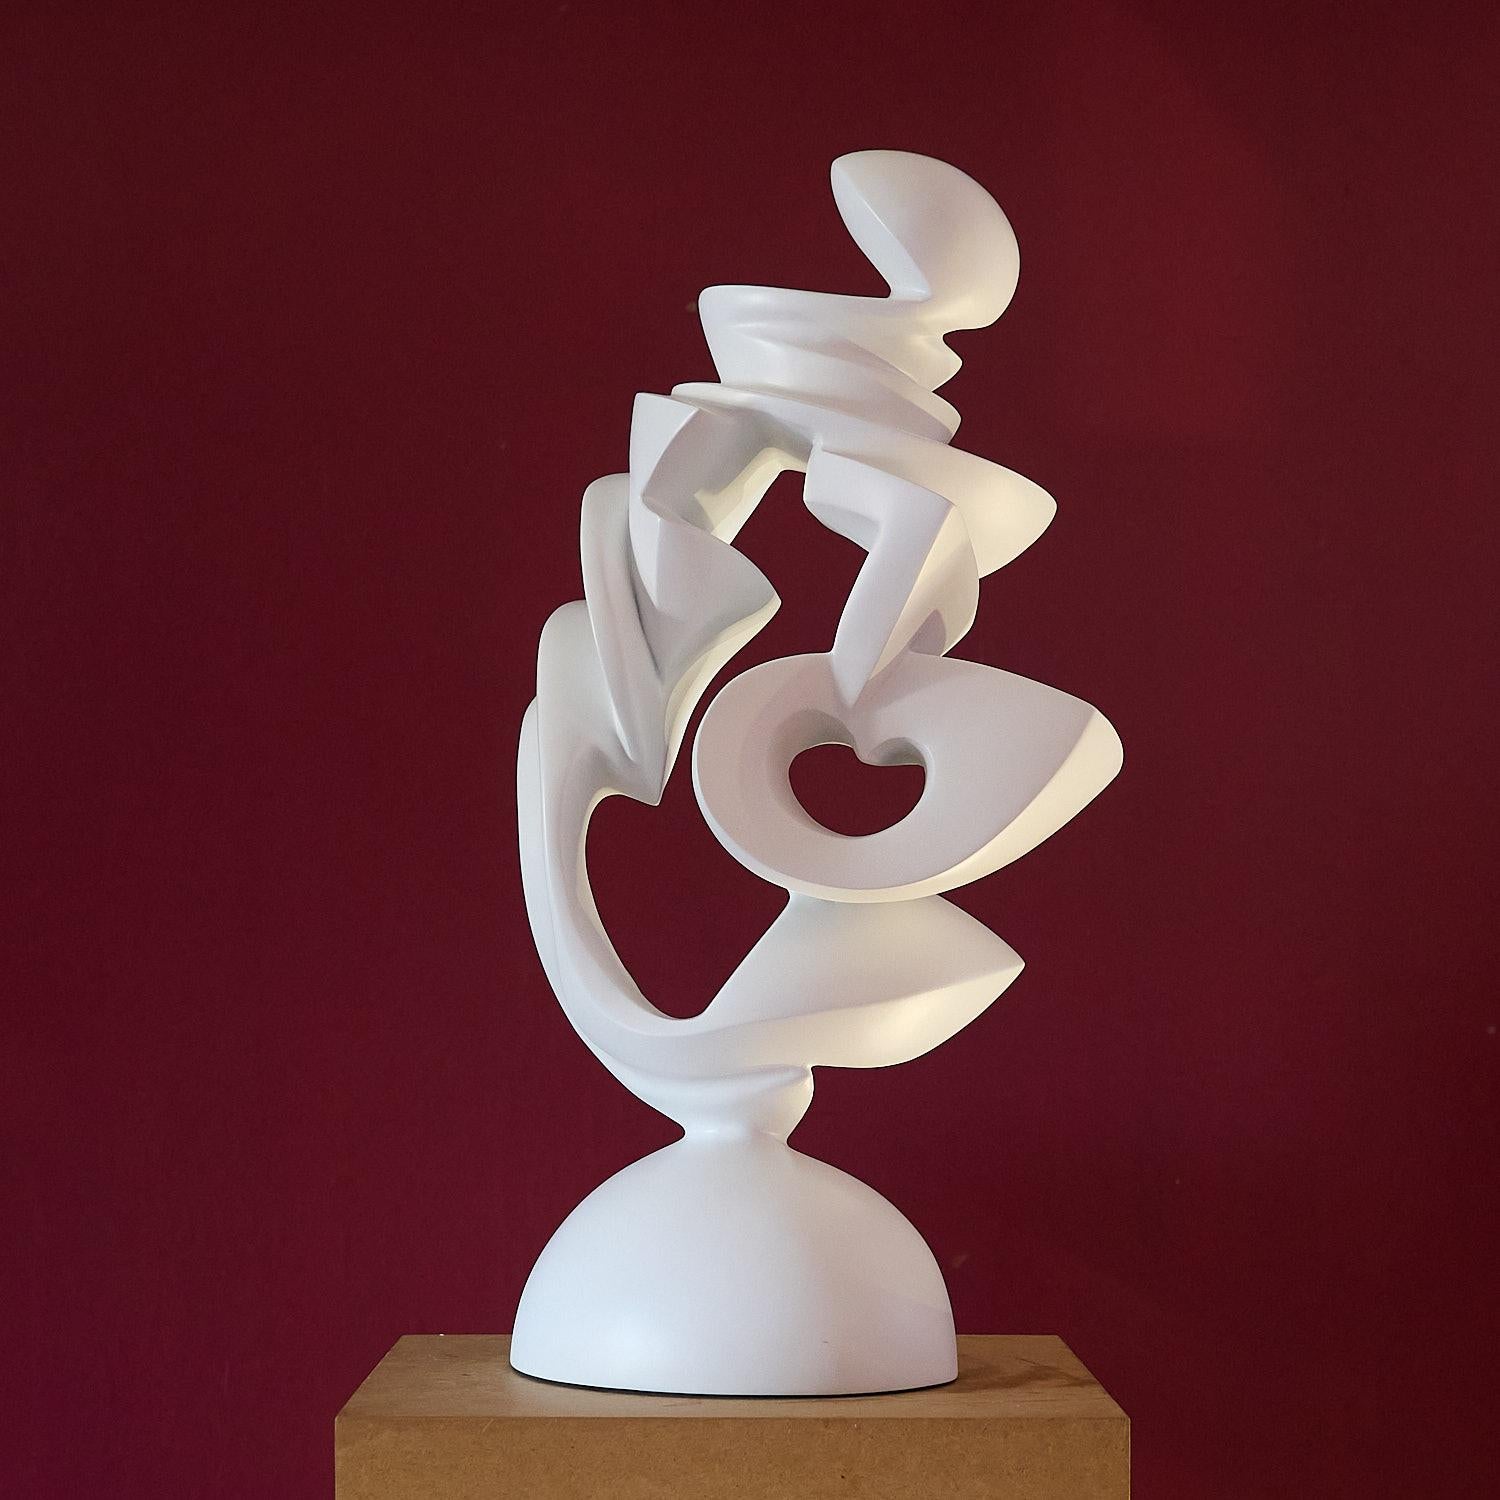 Jan Willem Krijger Abstract Sculpture - Expansion of the Heart , modern art contempary sculpture 21st century